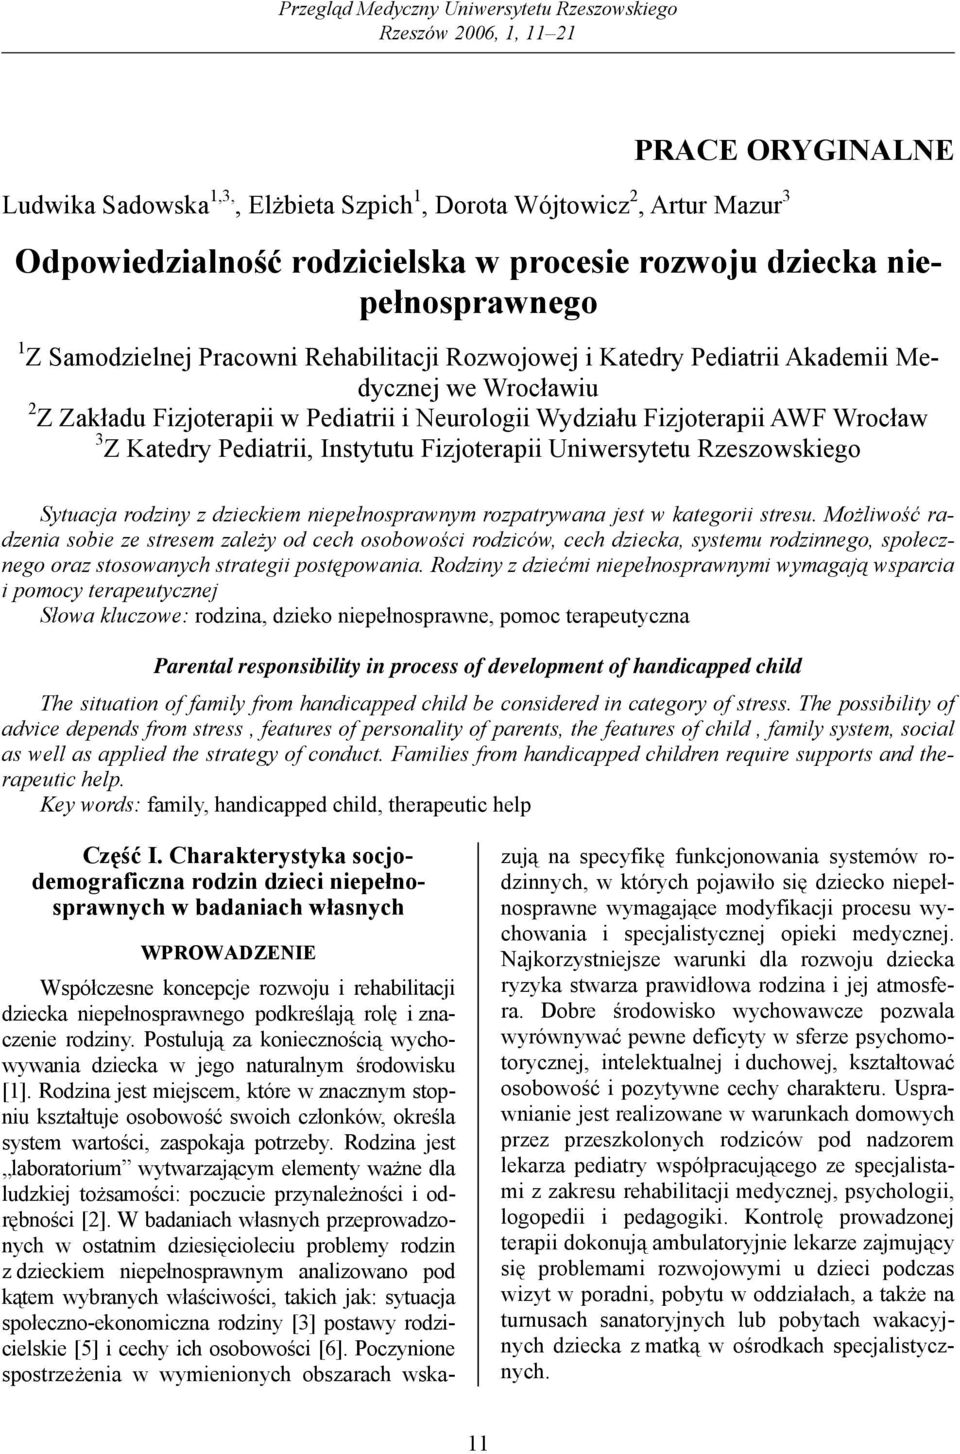 Wydziału Fizjoterapii AWF Wrocław 3 Z Katedry Pediatrii, Instytutu Fizjoterapii Uniwersytetu Rzeszowskiego Sytuacja rodziny z dzieckiem niepełnosprawnym rozpatrywana jest w kategorii stresu.